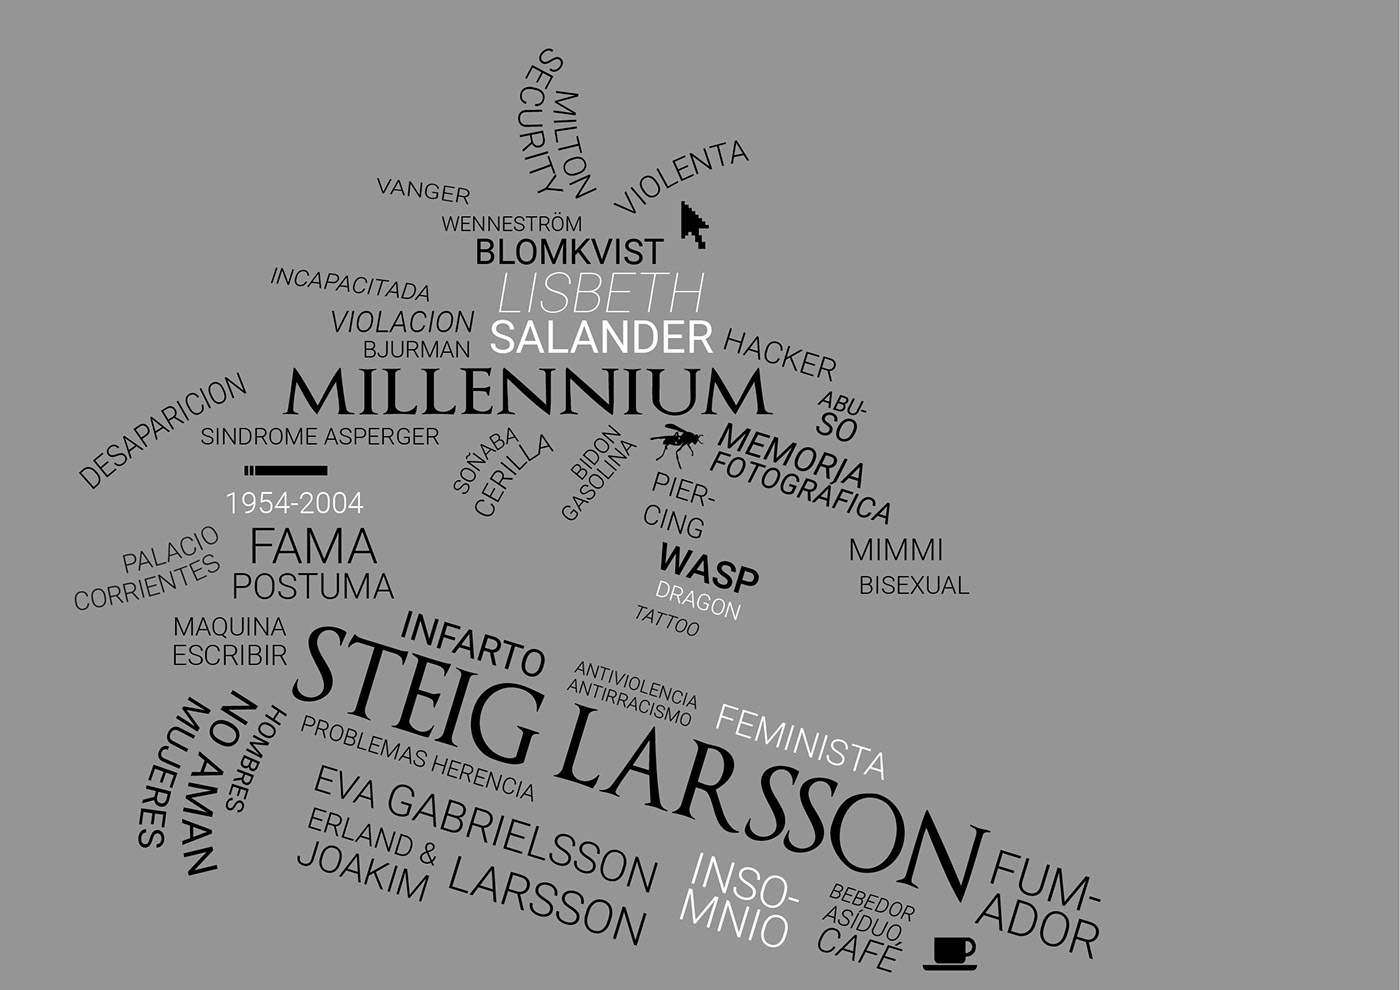 Millennium lisbeth salander Steig Larsson infographic